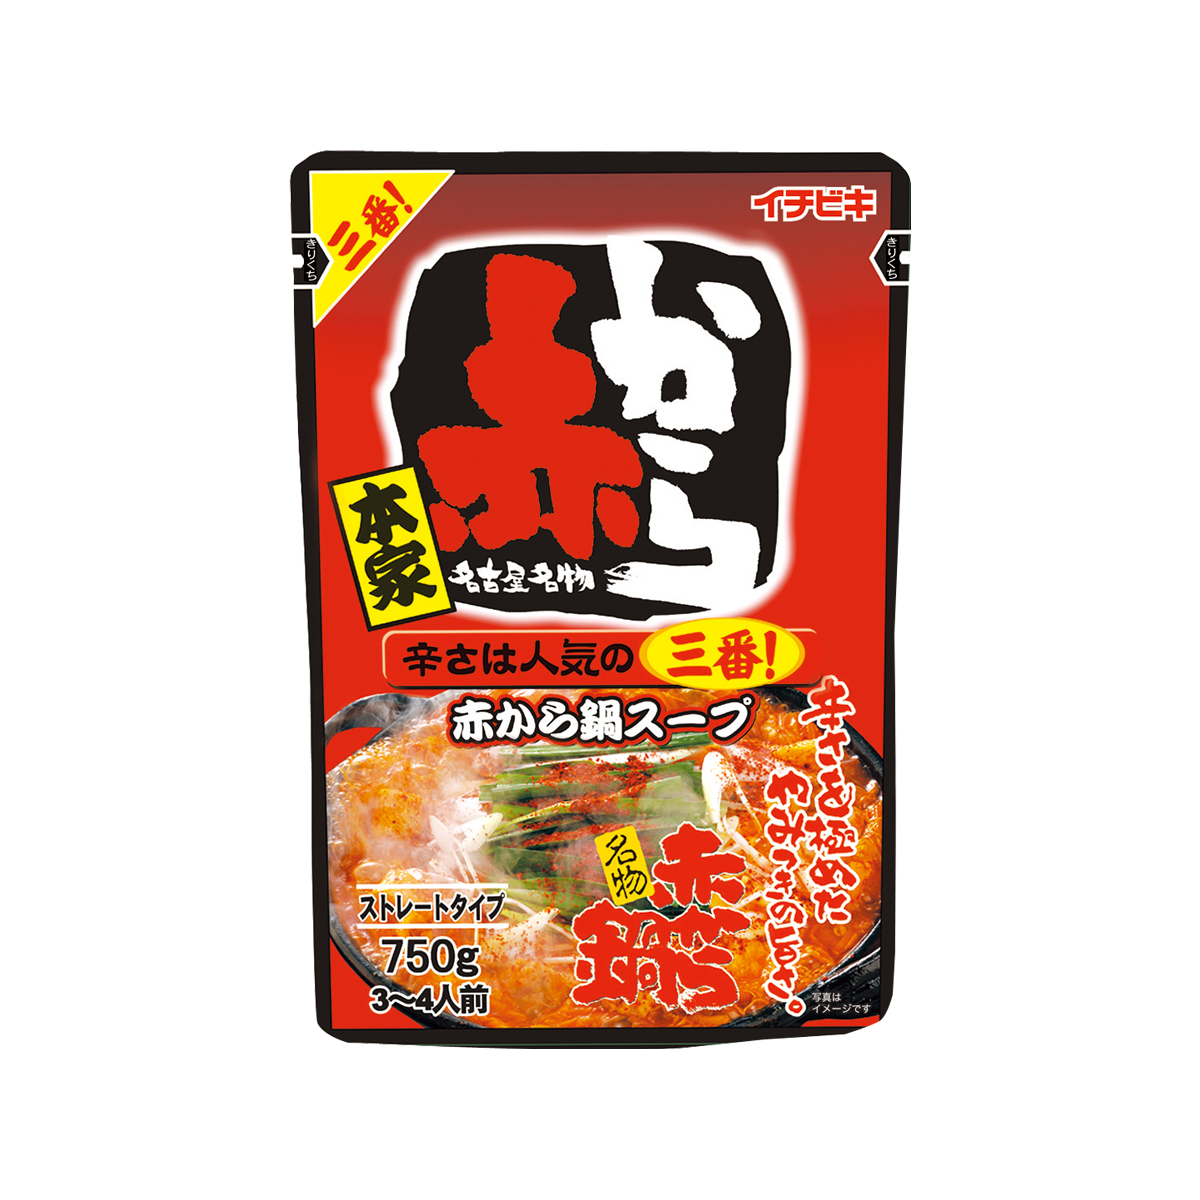 ストレート赤から鍋スープ3番 720g | イチビキ 公式サイト | 名古屋のみそ・しょうゆ・つゆメーカー